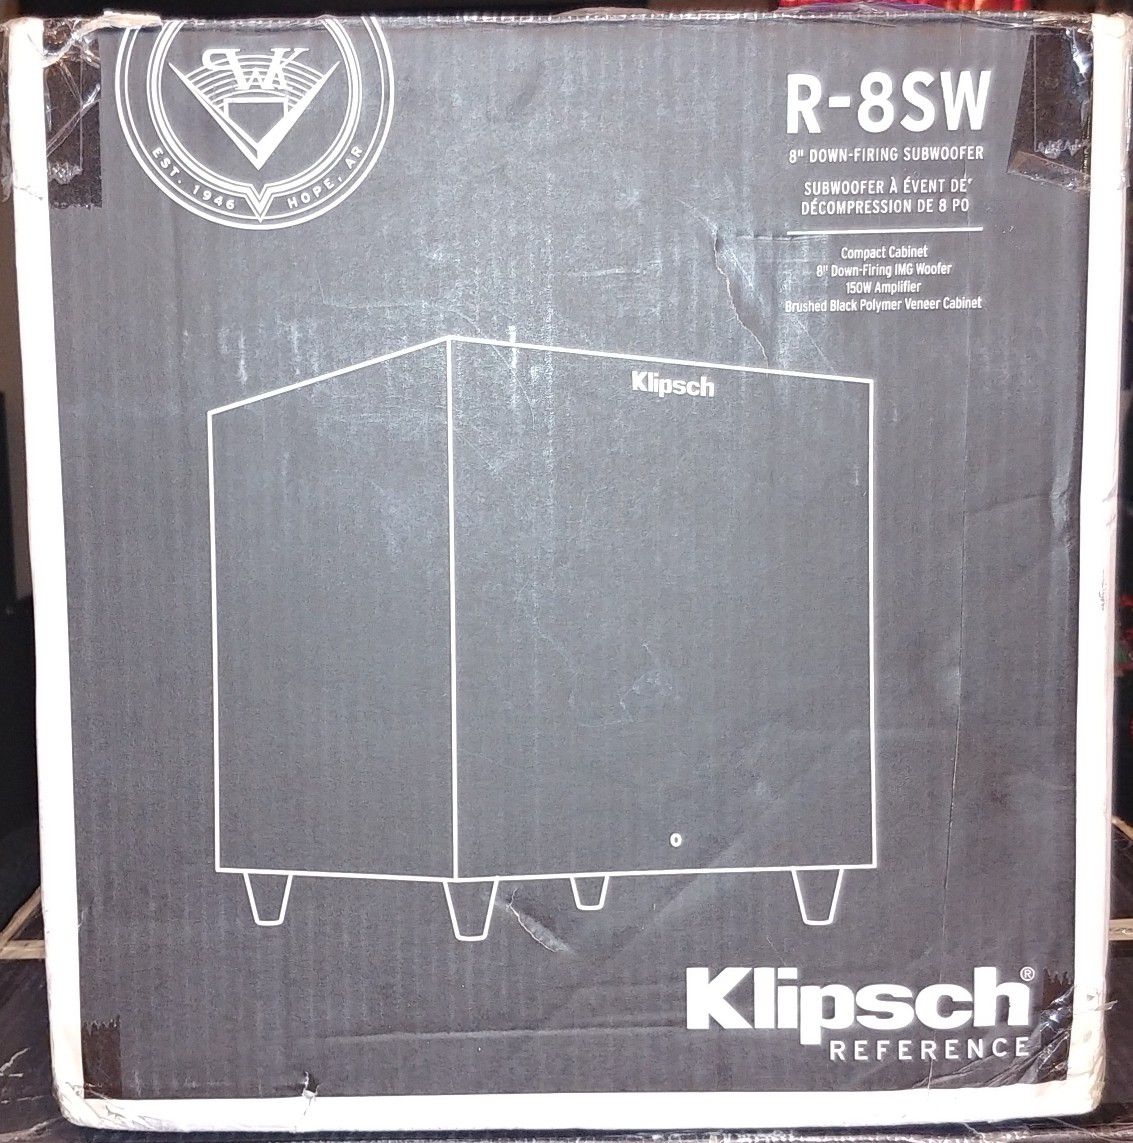 Klipsch Reference R-8SW Surround Subwoofer, 150 Watts Peak Power (Brushed Black Vinyl, 8-Inch)